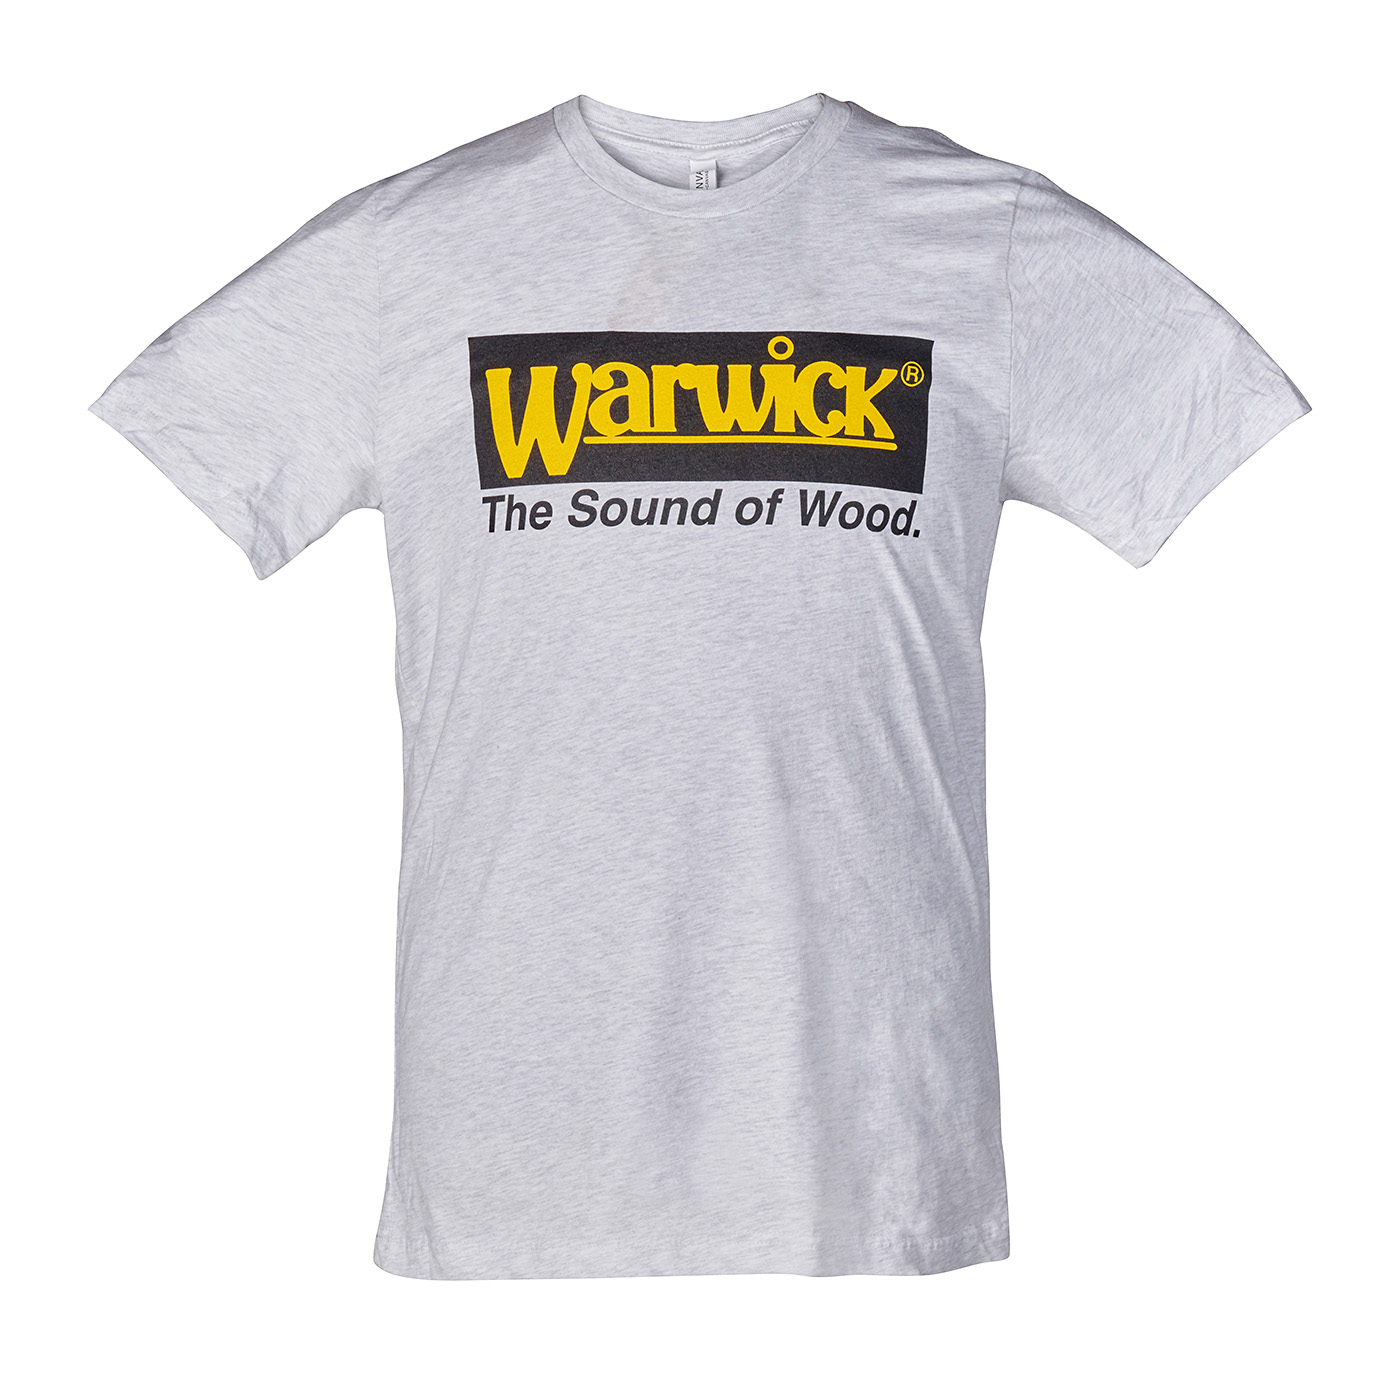 Warwick Promo - Vintage Logo T-Shirt, Gray - Size M